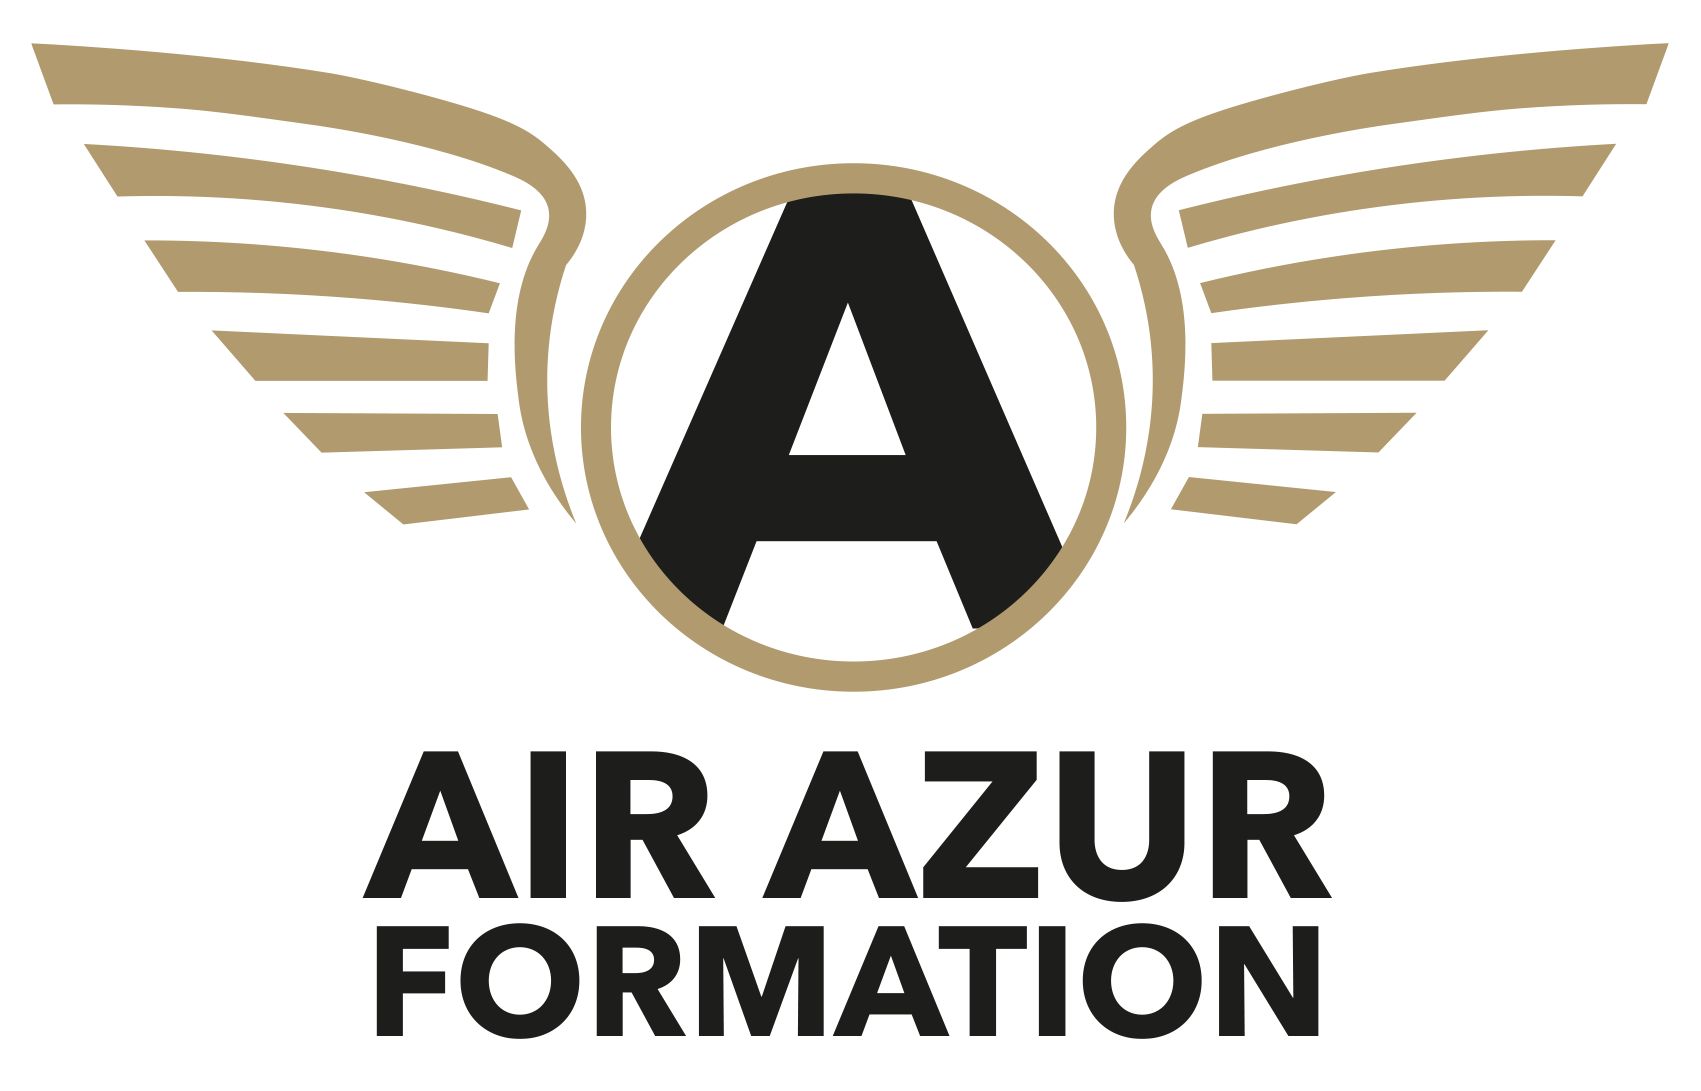 airazurformation